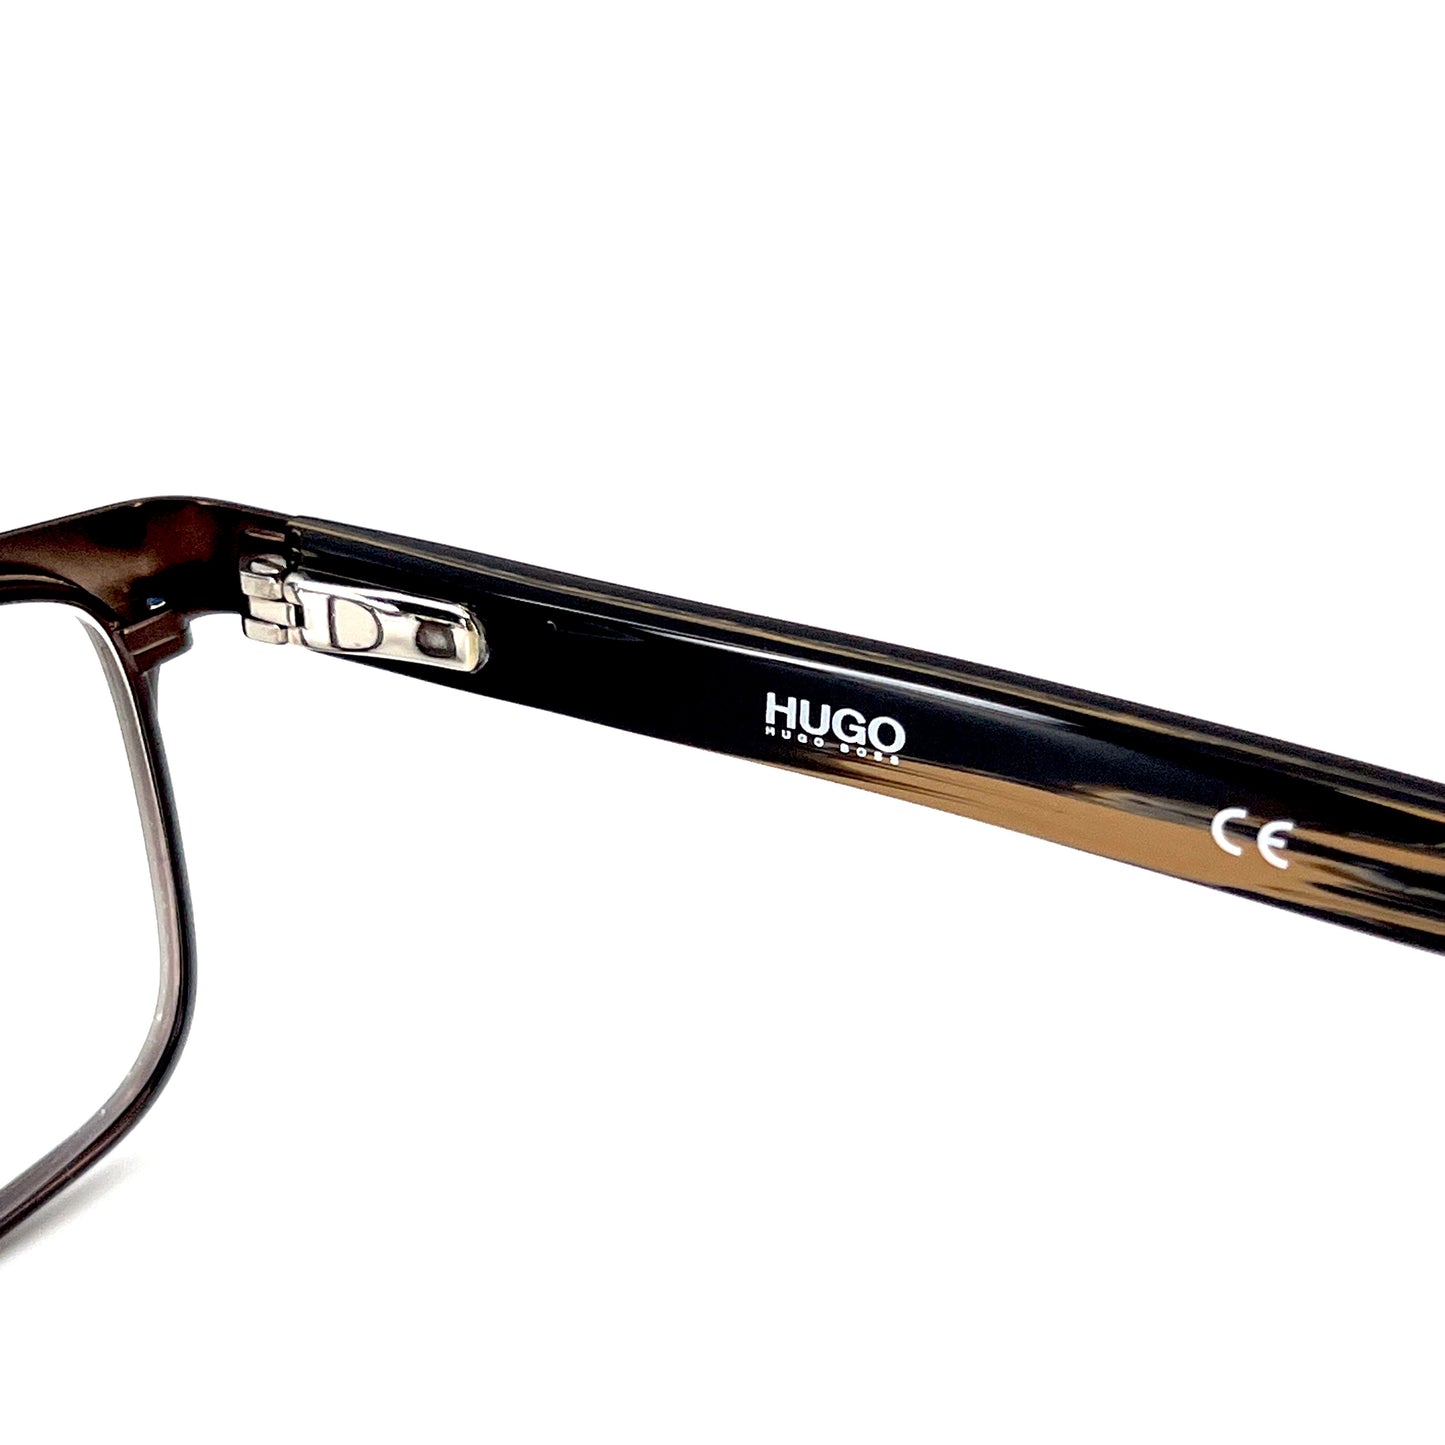 HUGO BOSS Eyeglasses HG0151 4IN